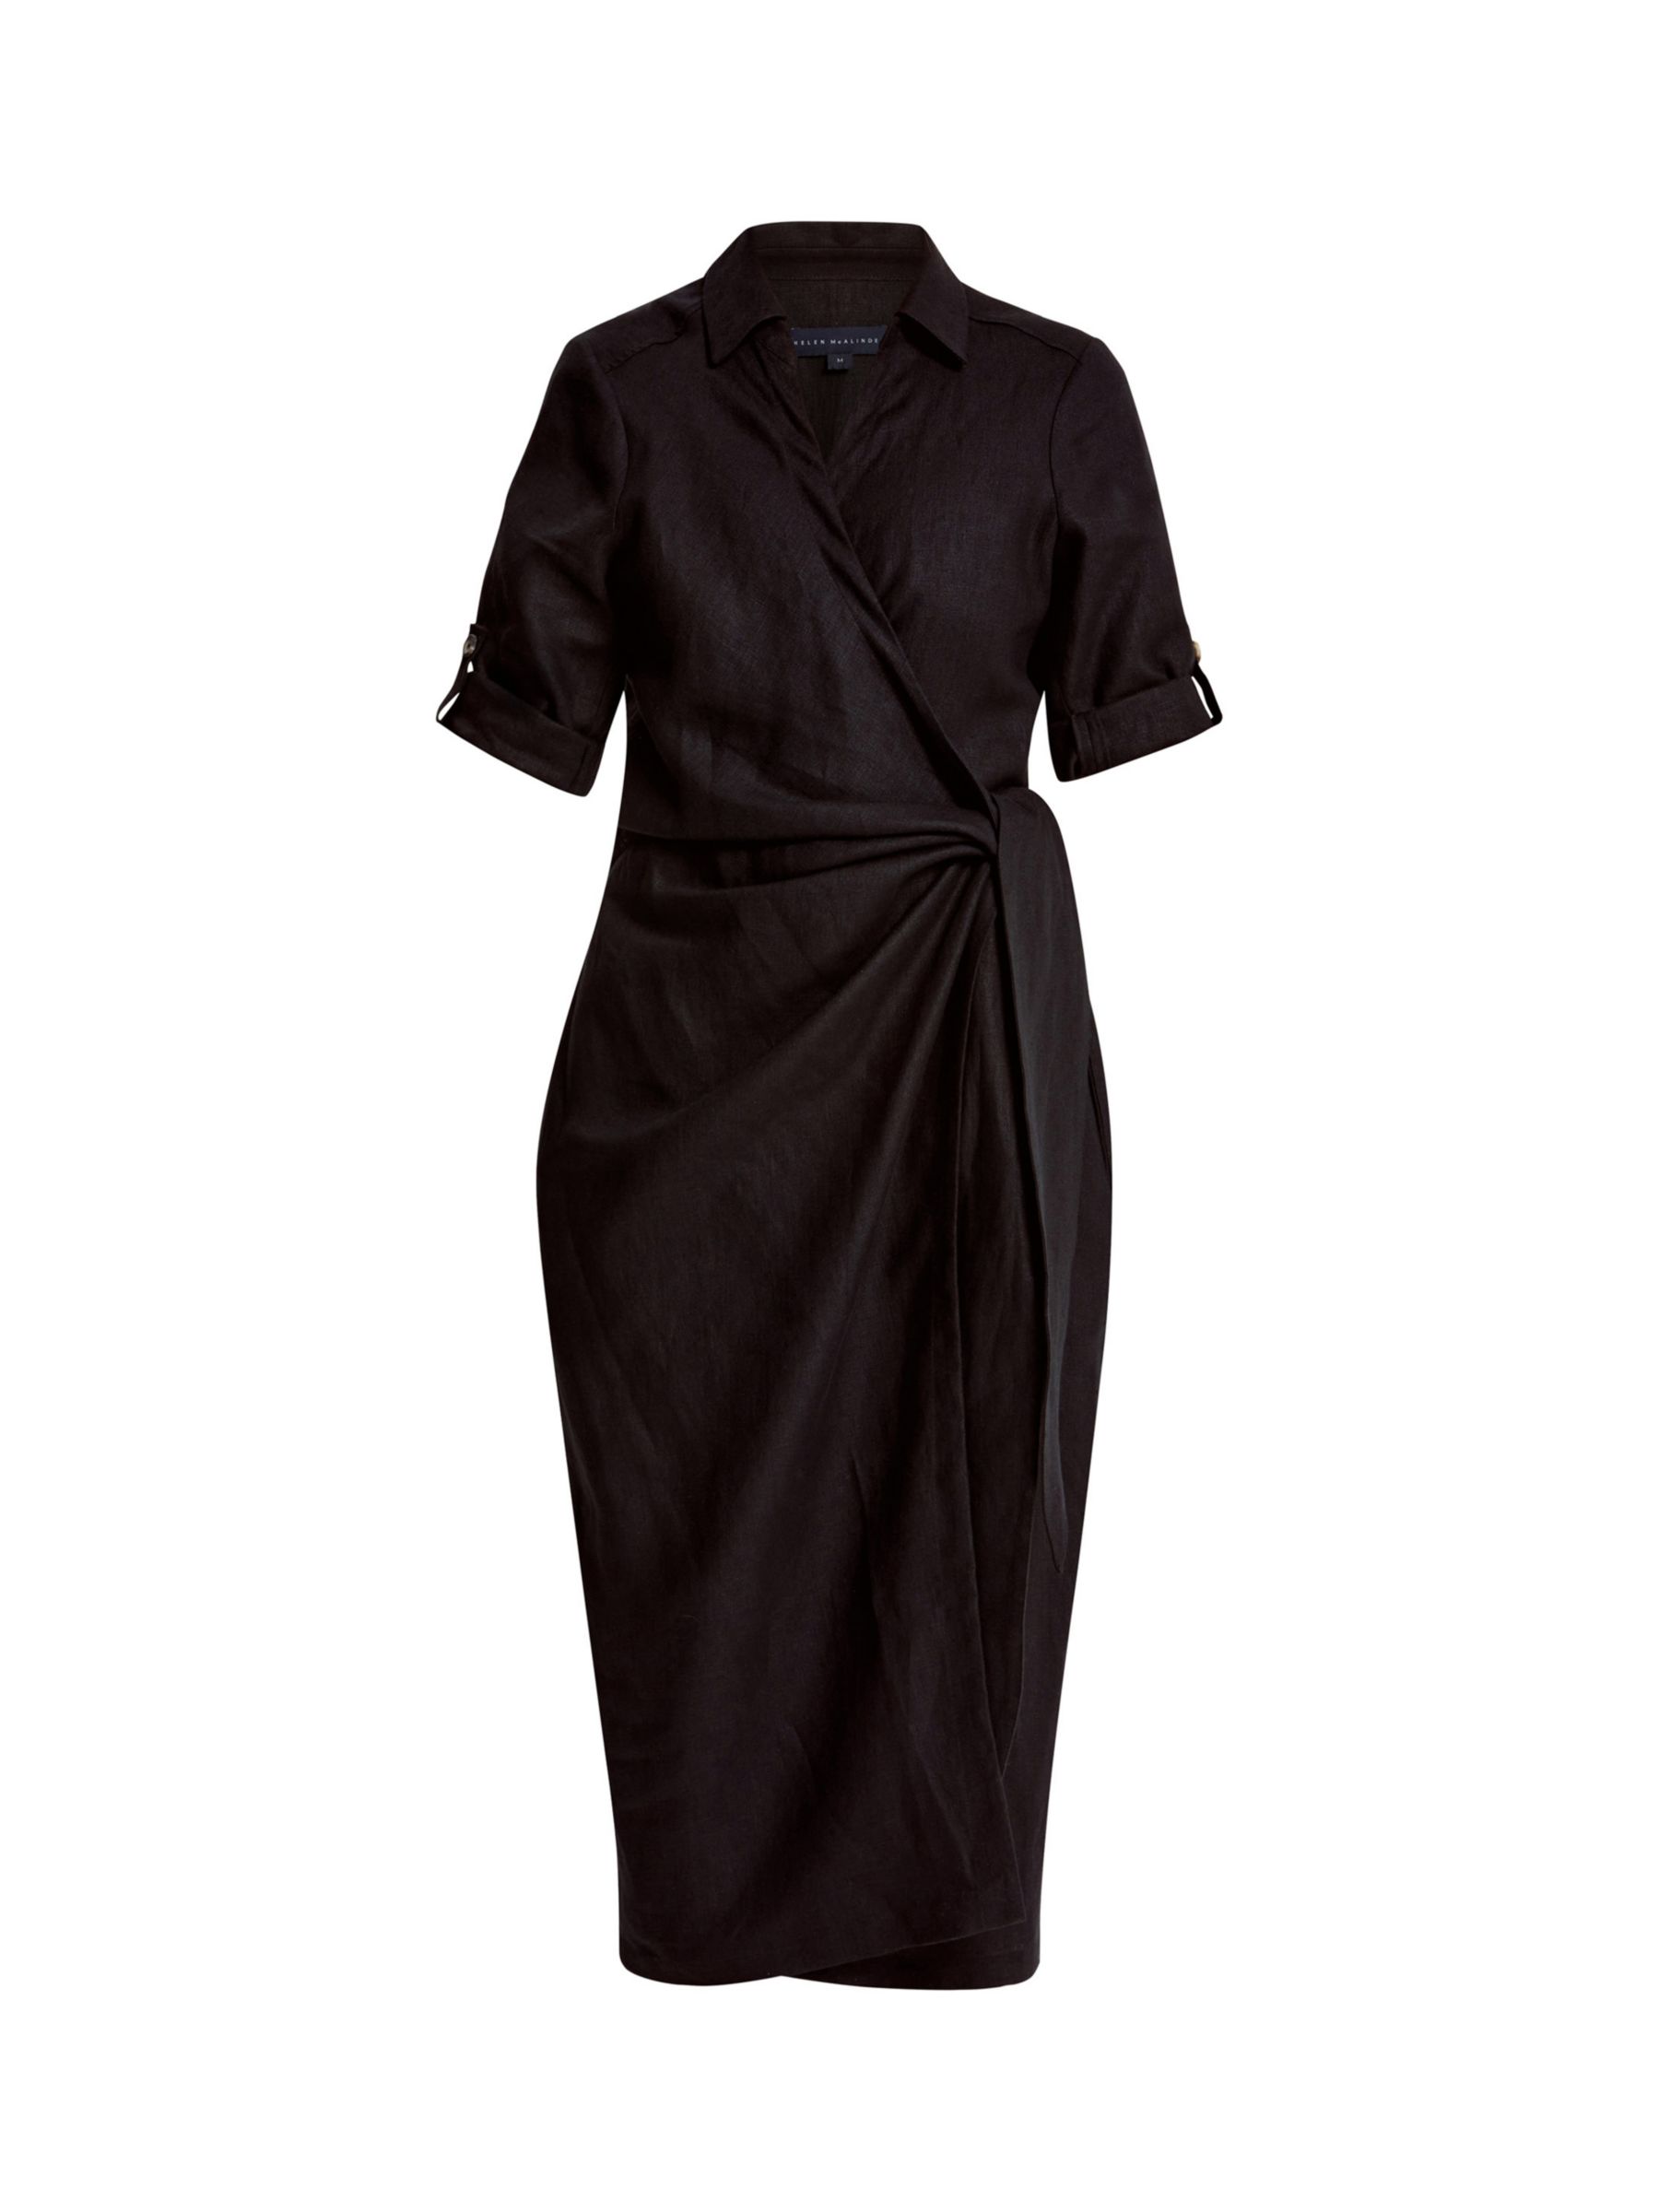 Helen McAlinden Leonne Wrap Midi Dress, Black, S